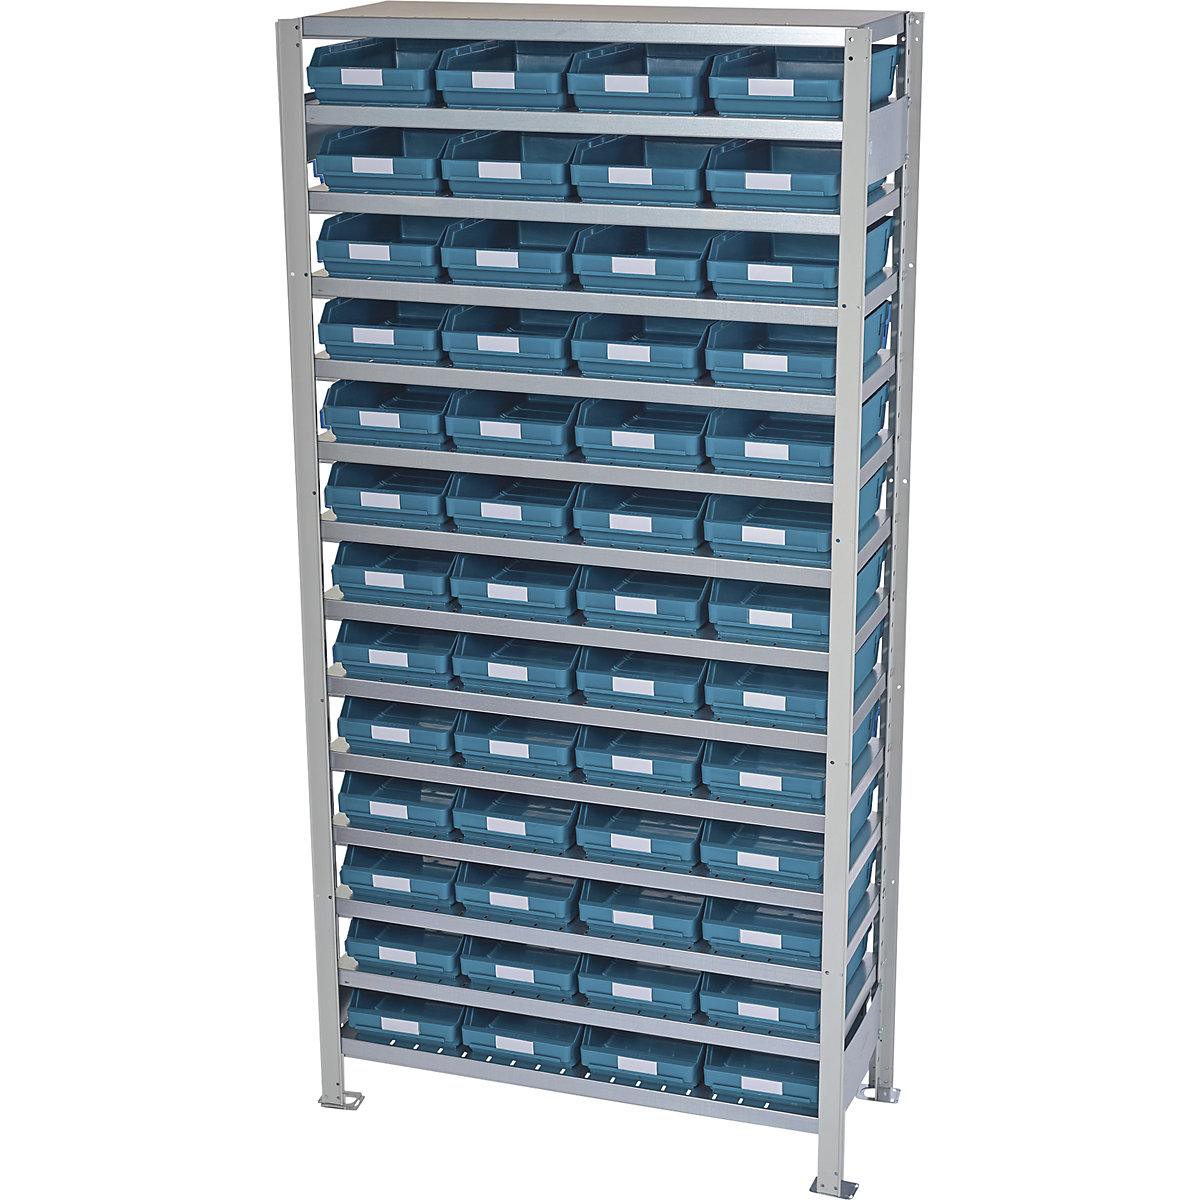 Estante de encaixar com caixas para estante – STEMO, altura da estante 2100 mm, estante básica, profundidade 500 mm, 52 caixas verdes-43